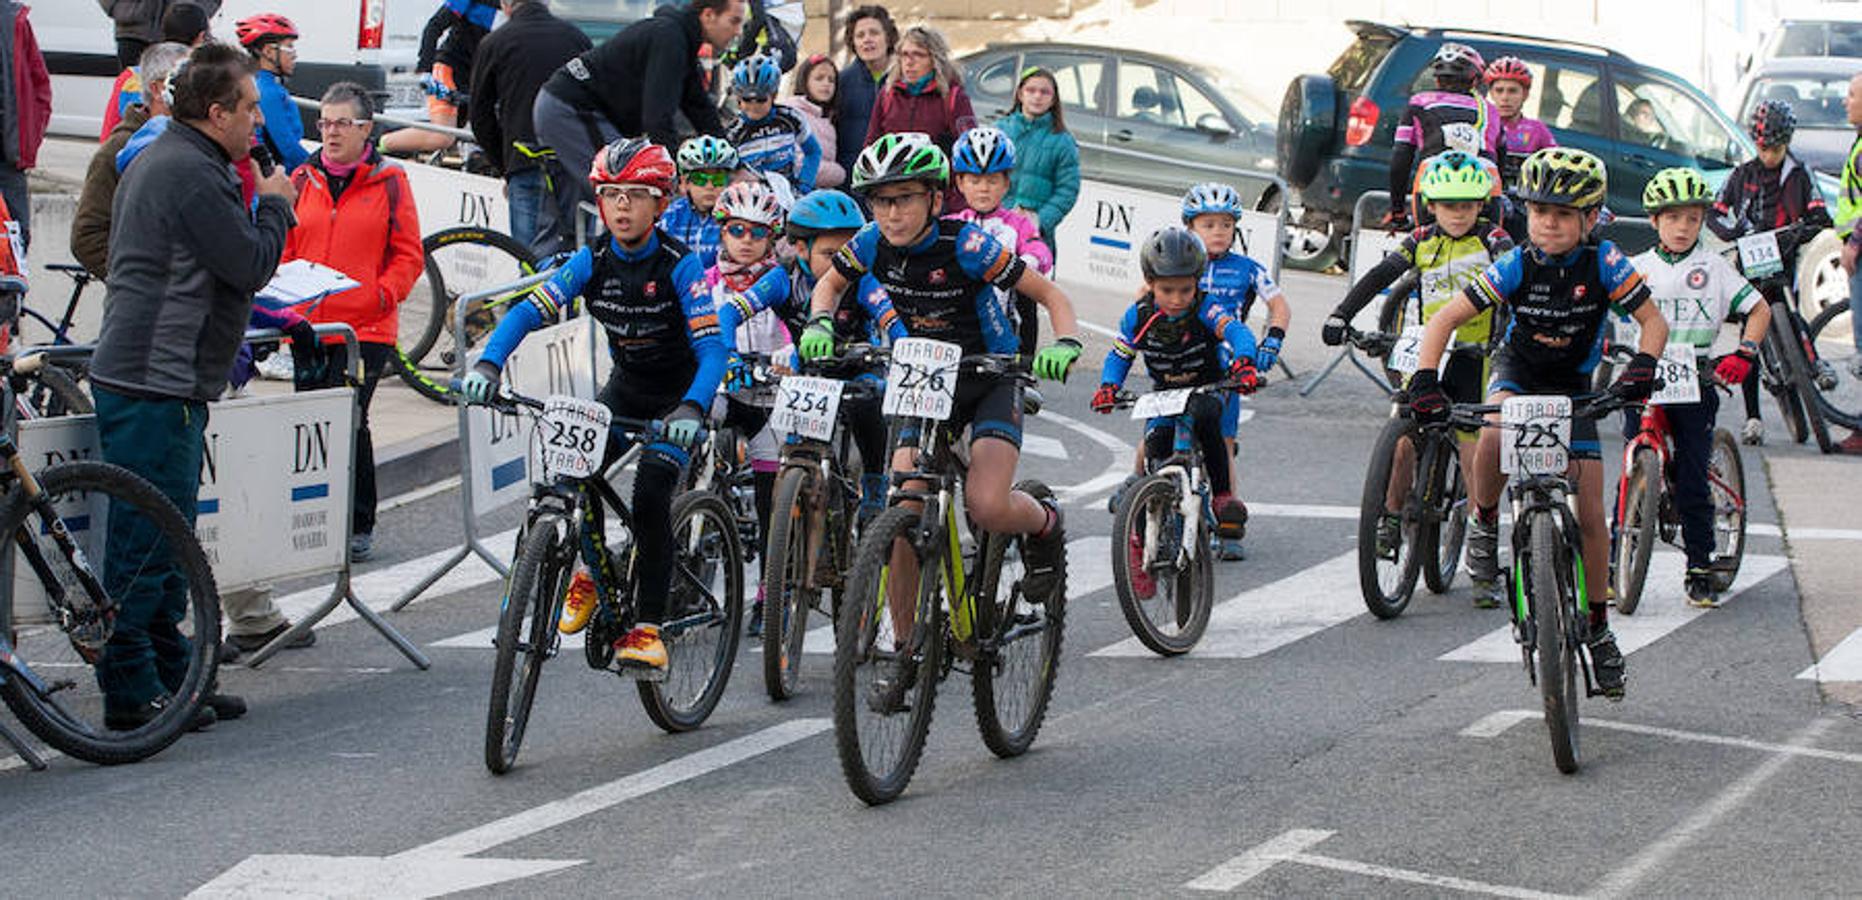 Los ciclistas riojanos conquistan nueve podios en el Open de bicicleta de montaña del Diario de Navarra en un espectacular cierre de competición en Estella